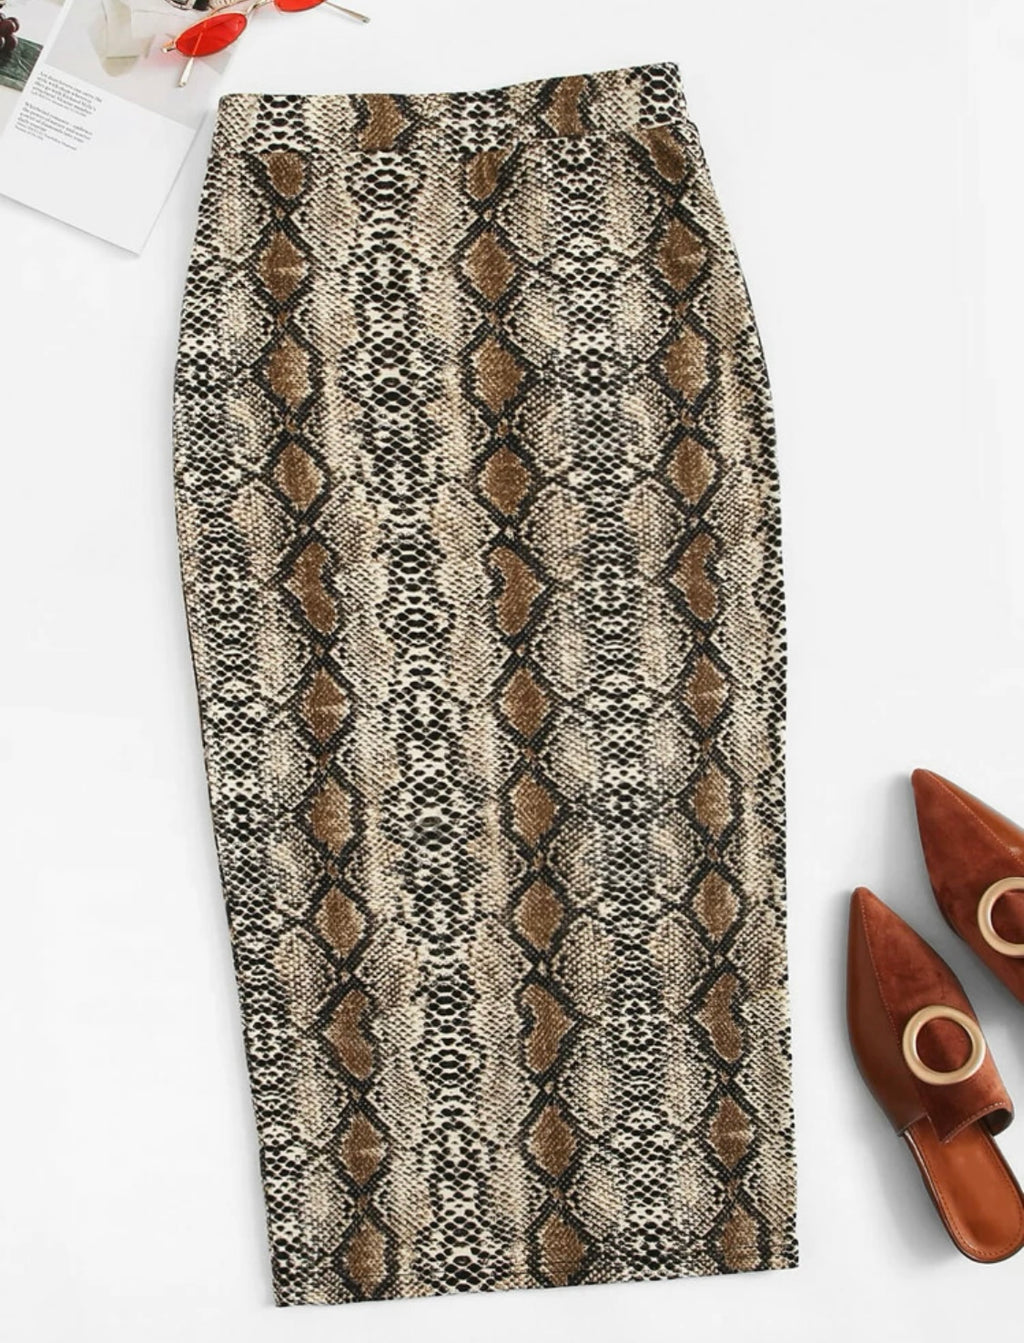 Snakeskin Pencil Skirt